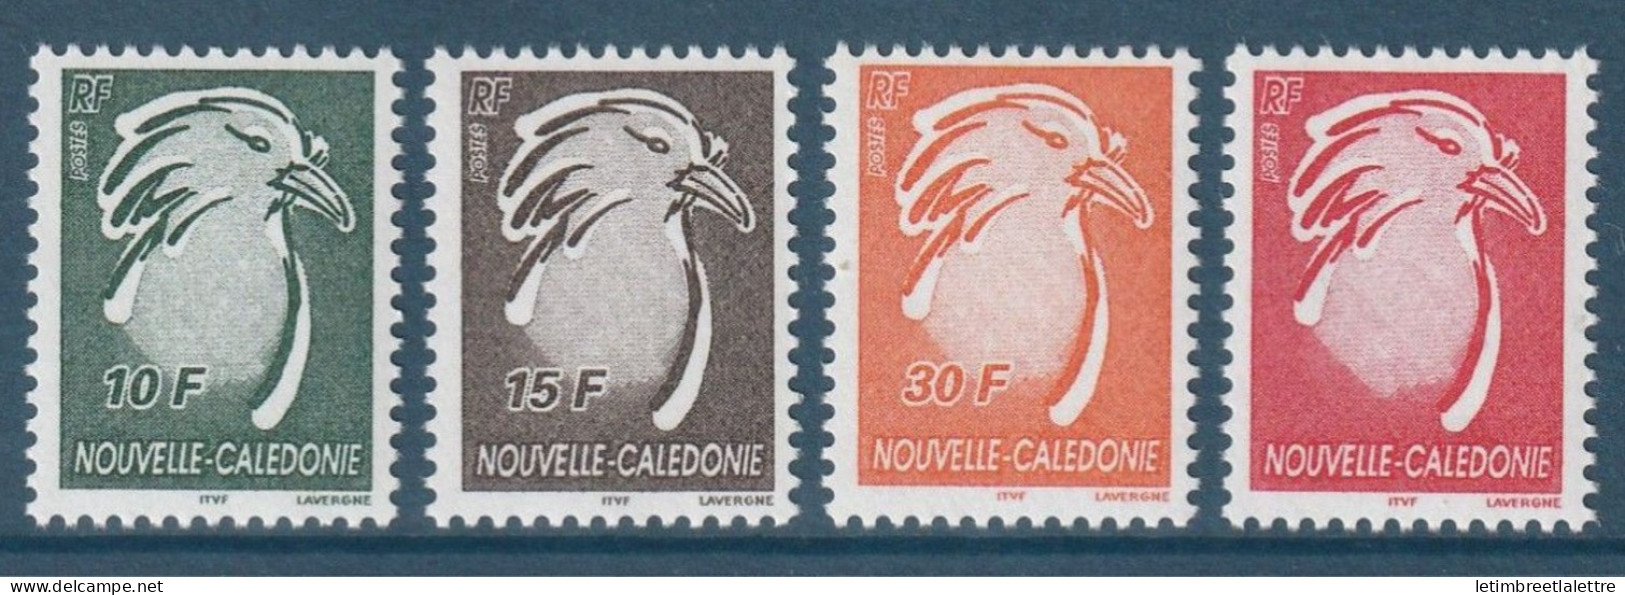 Nouvelle Calédonie - YT N° 885 à 888 ** - Neuf Sans Charnière - 2003 - Neufs